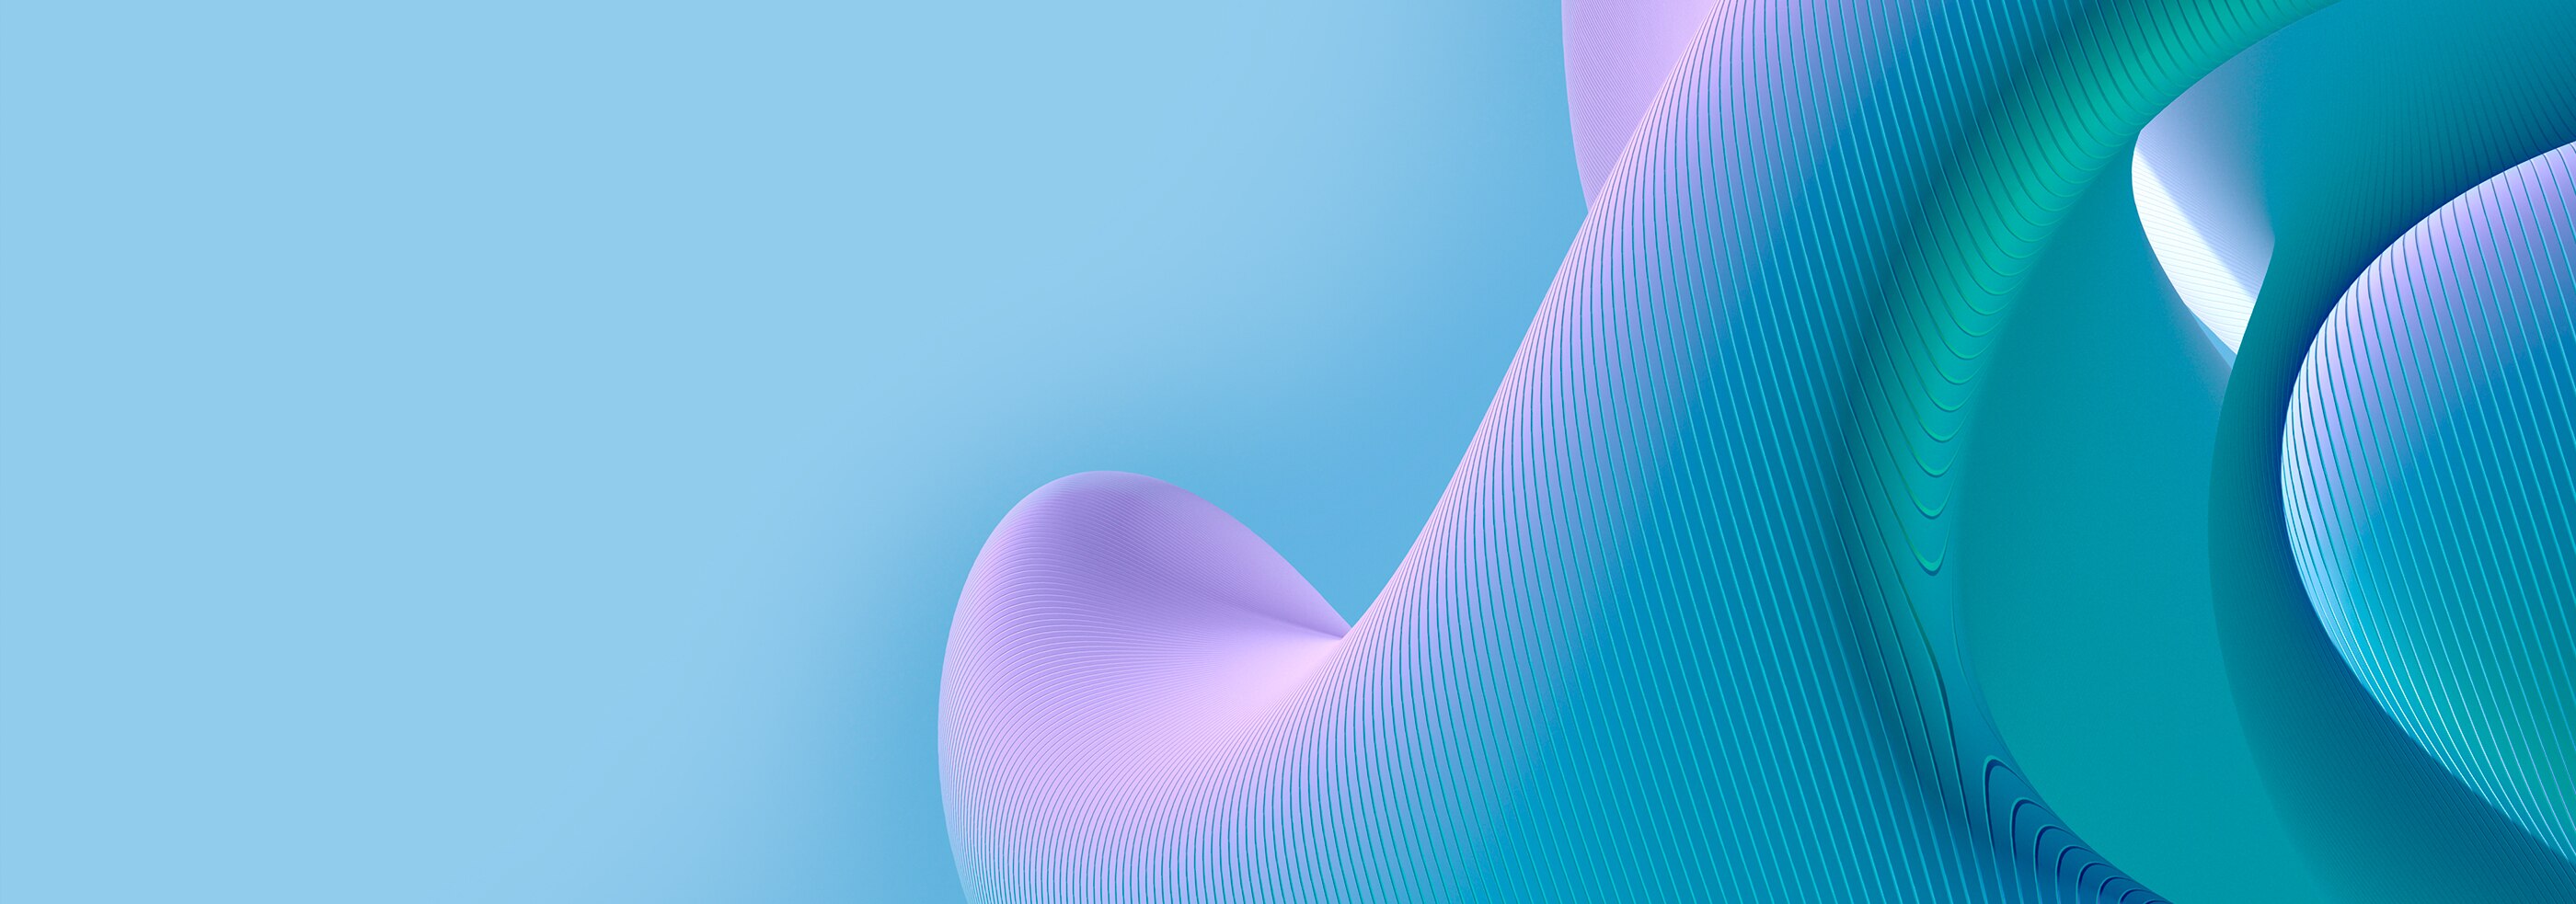 藍色和紫色表面上顯示 3D 曲線圖案